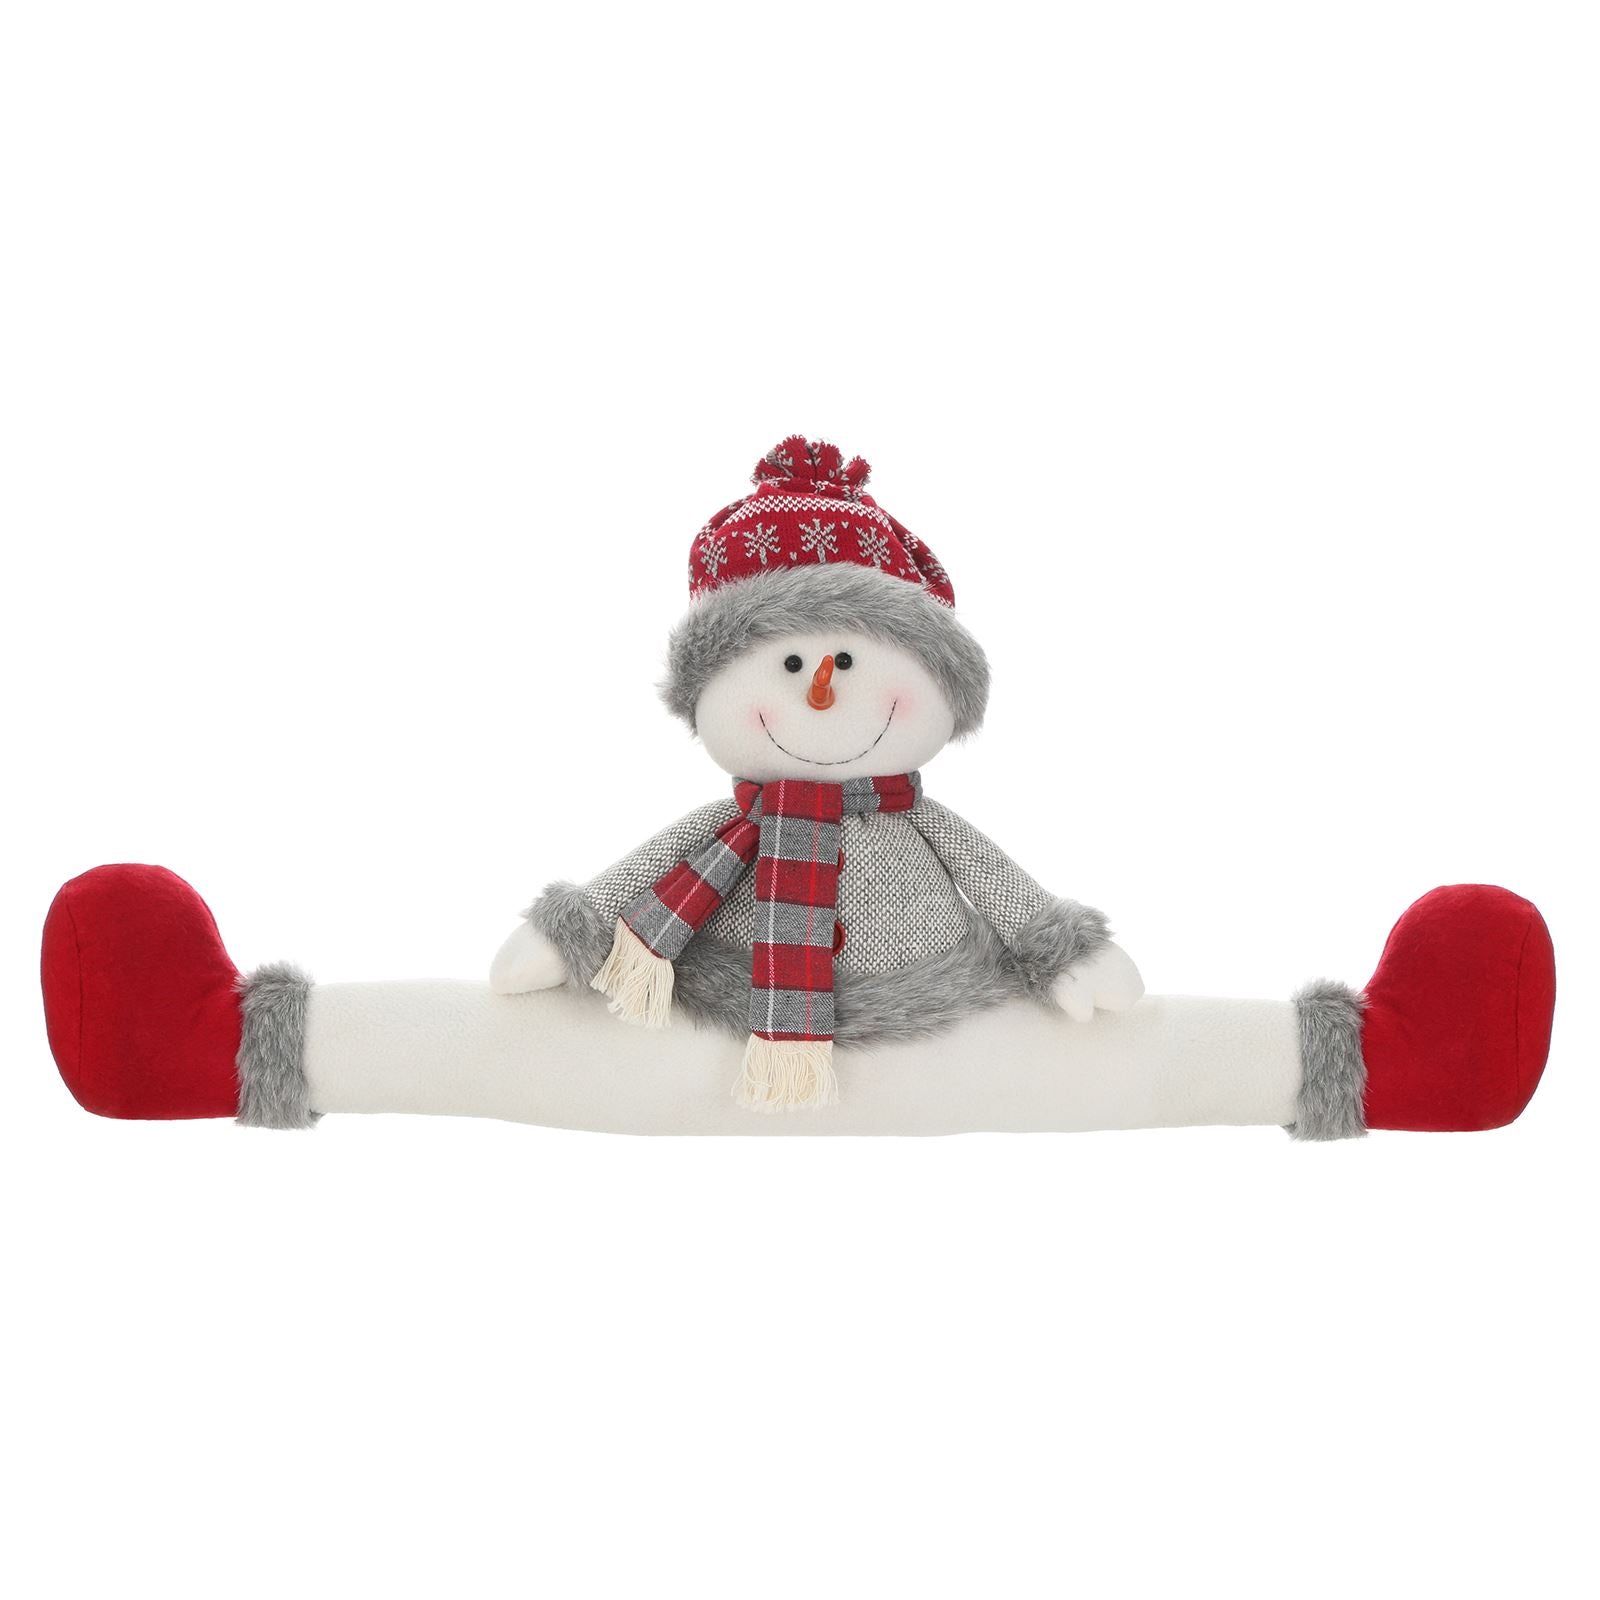 Mr Crimbo Novelty Plush Character Christmas Draught Excluder - MrCrimbo.co.uk -XS5730 - Snowman -christmas decorations